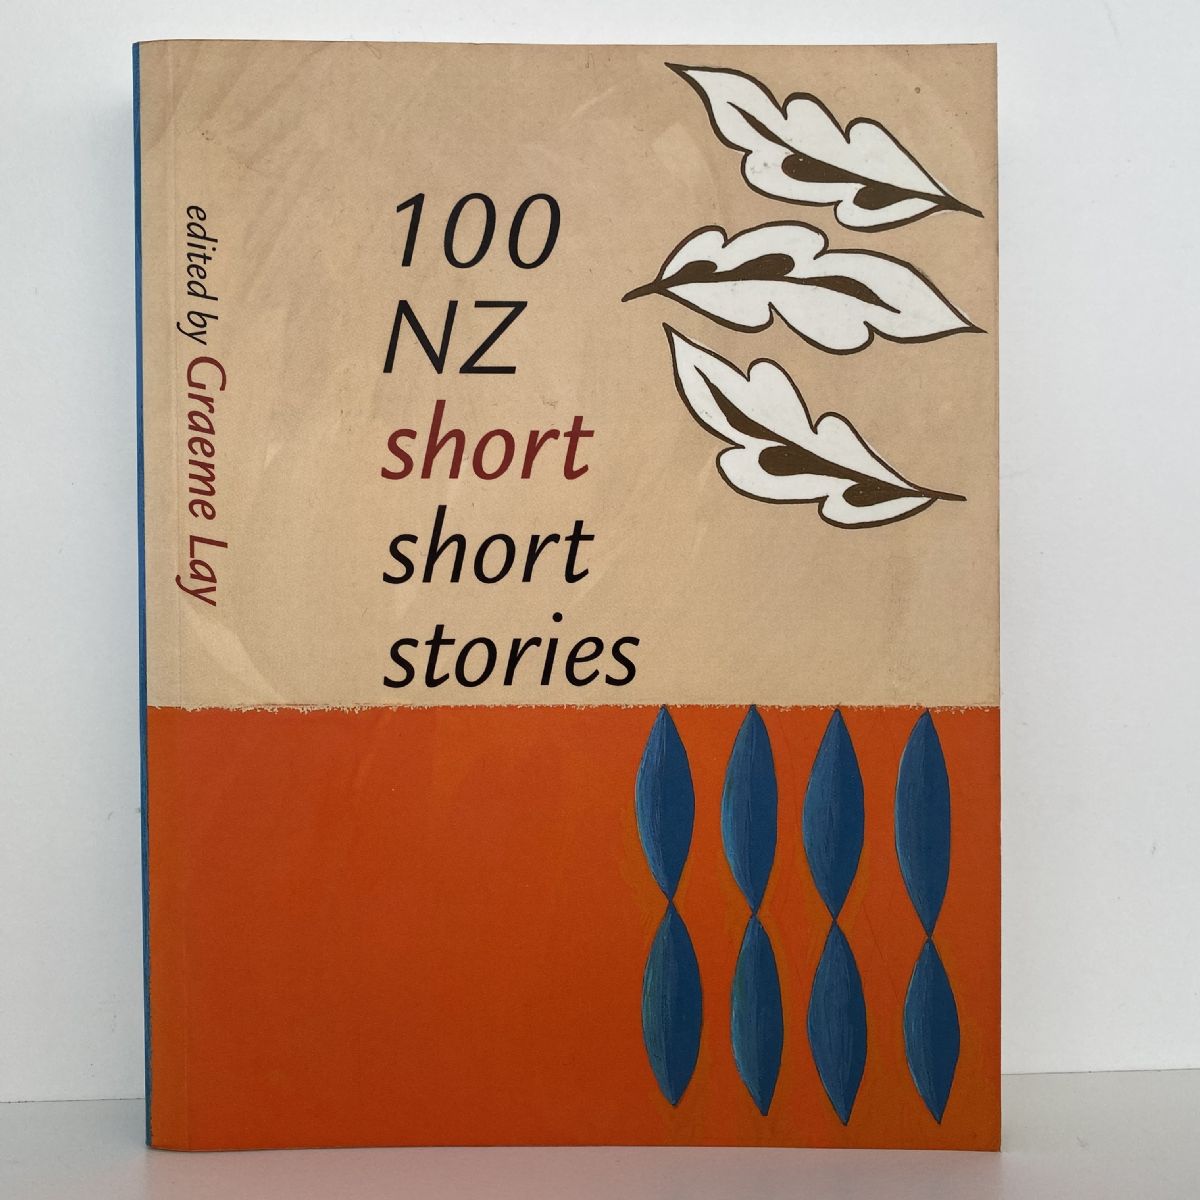 100 NZ Short Short Stories